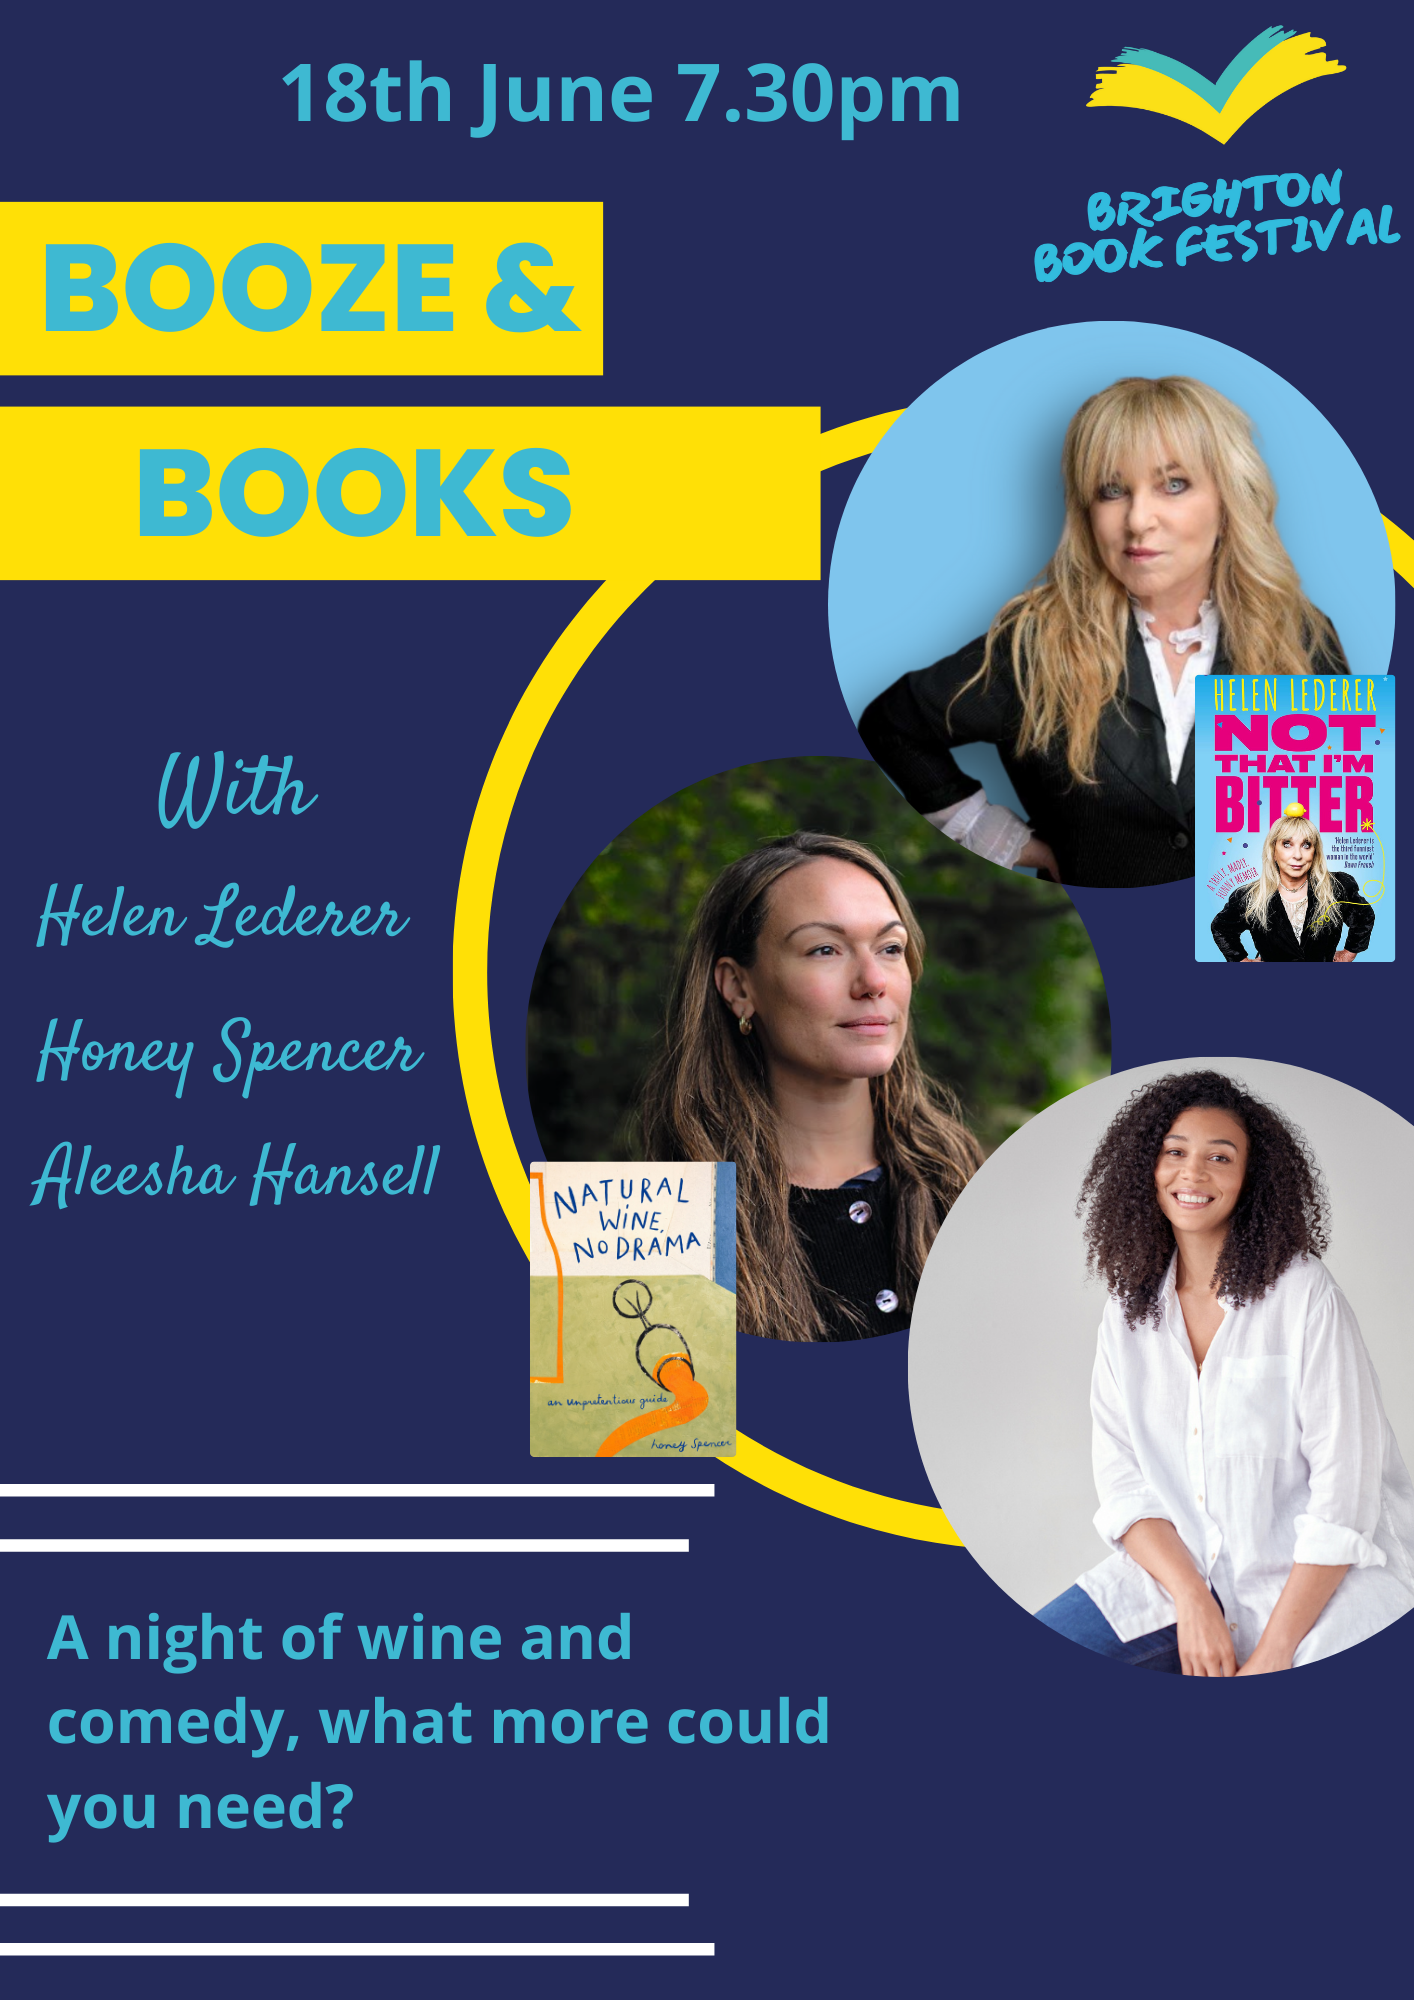 Booze & Books with Helen Lederer, Honey Spencer, and Aleesha Hansel